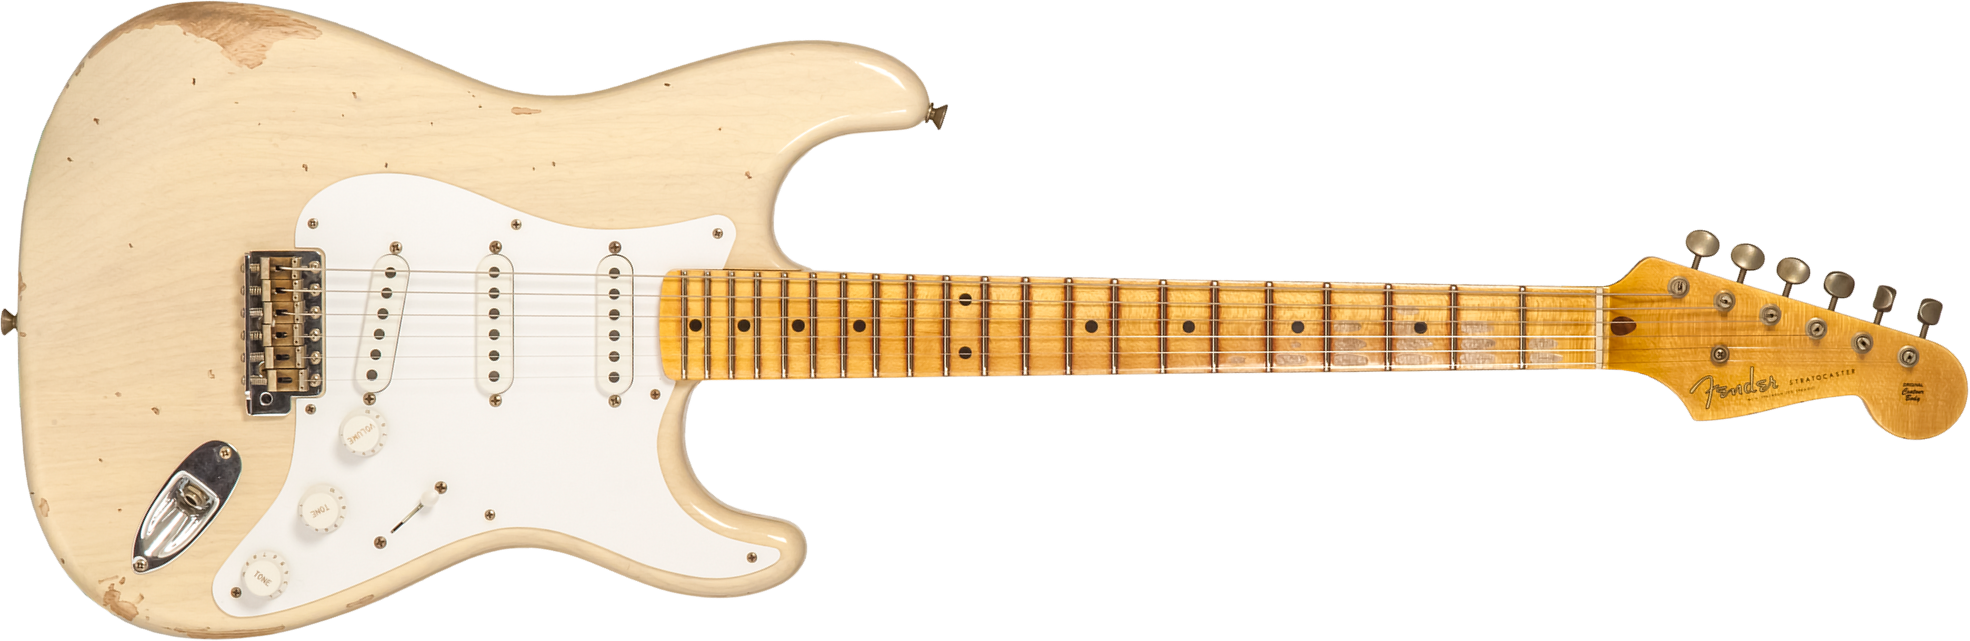 Fender Custom Shop Strat 1954 70th Anniv. 3s Trem Mn #xn4342 - Relic Vintage Blonde - Elektrische gitaar in Str-vorm - Main picture